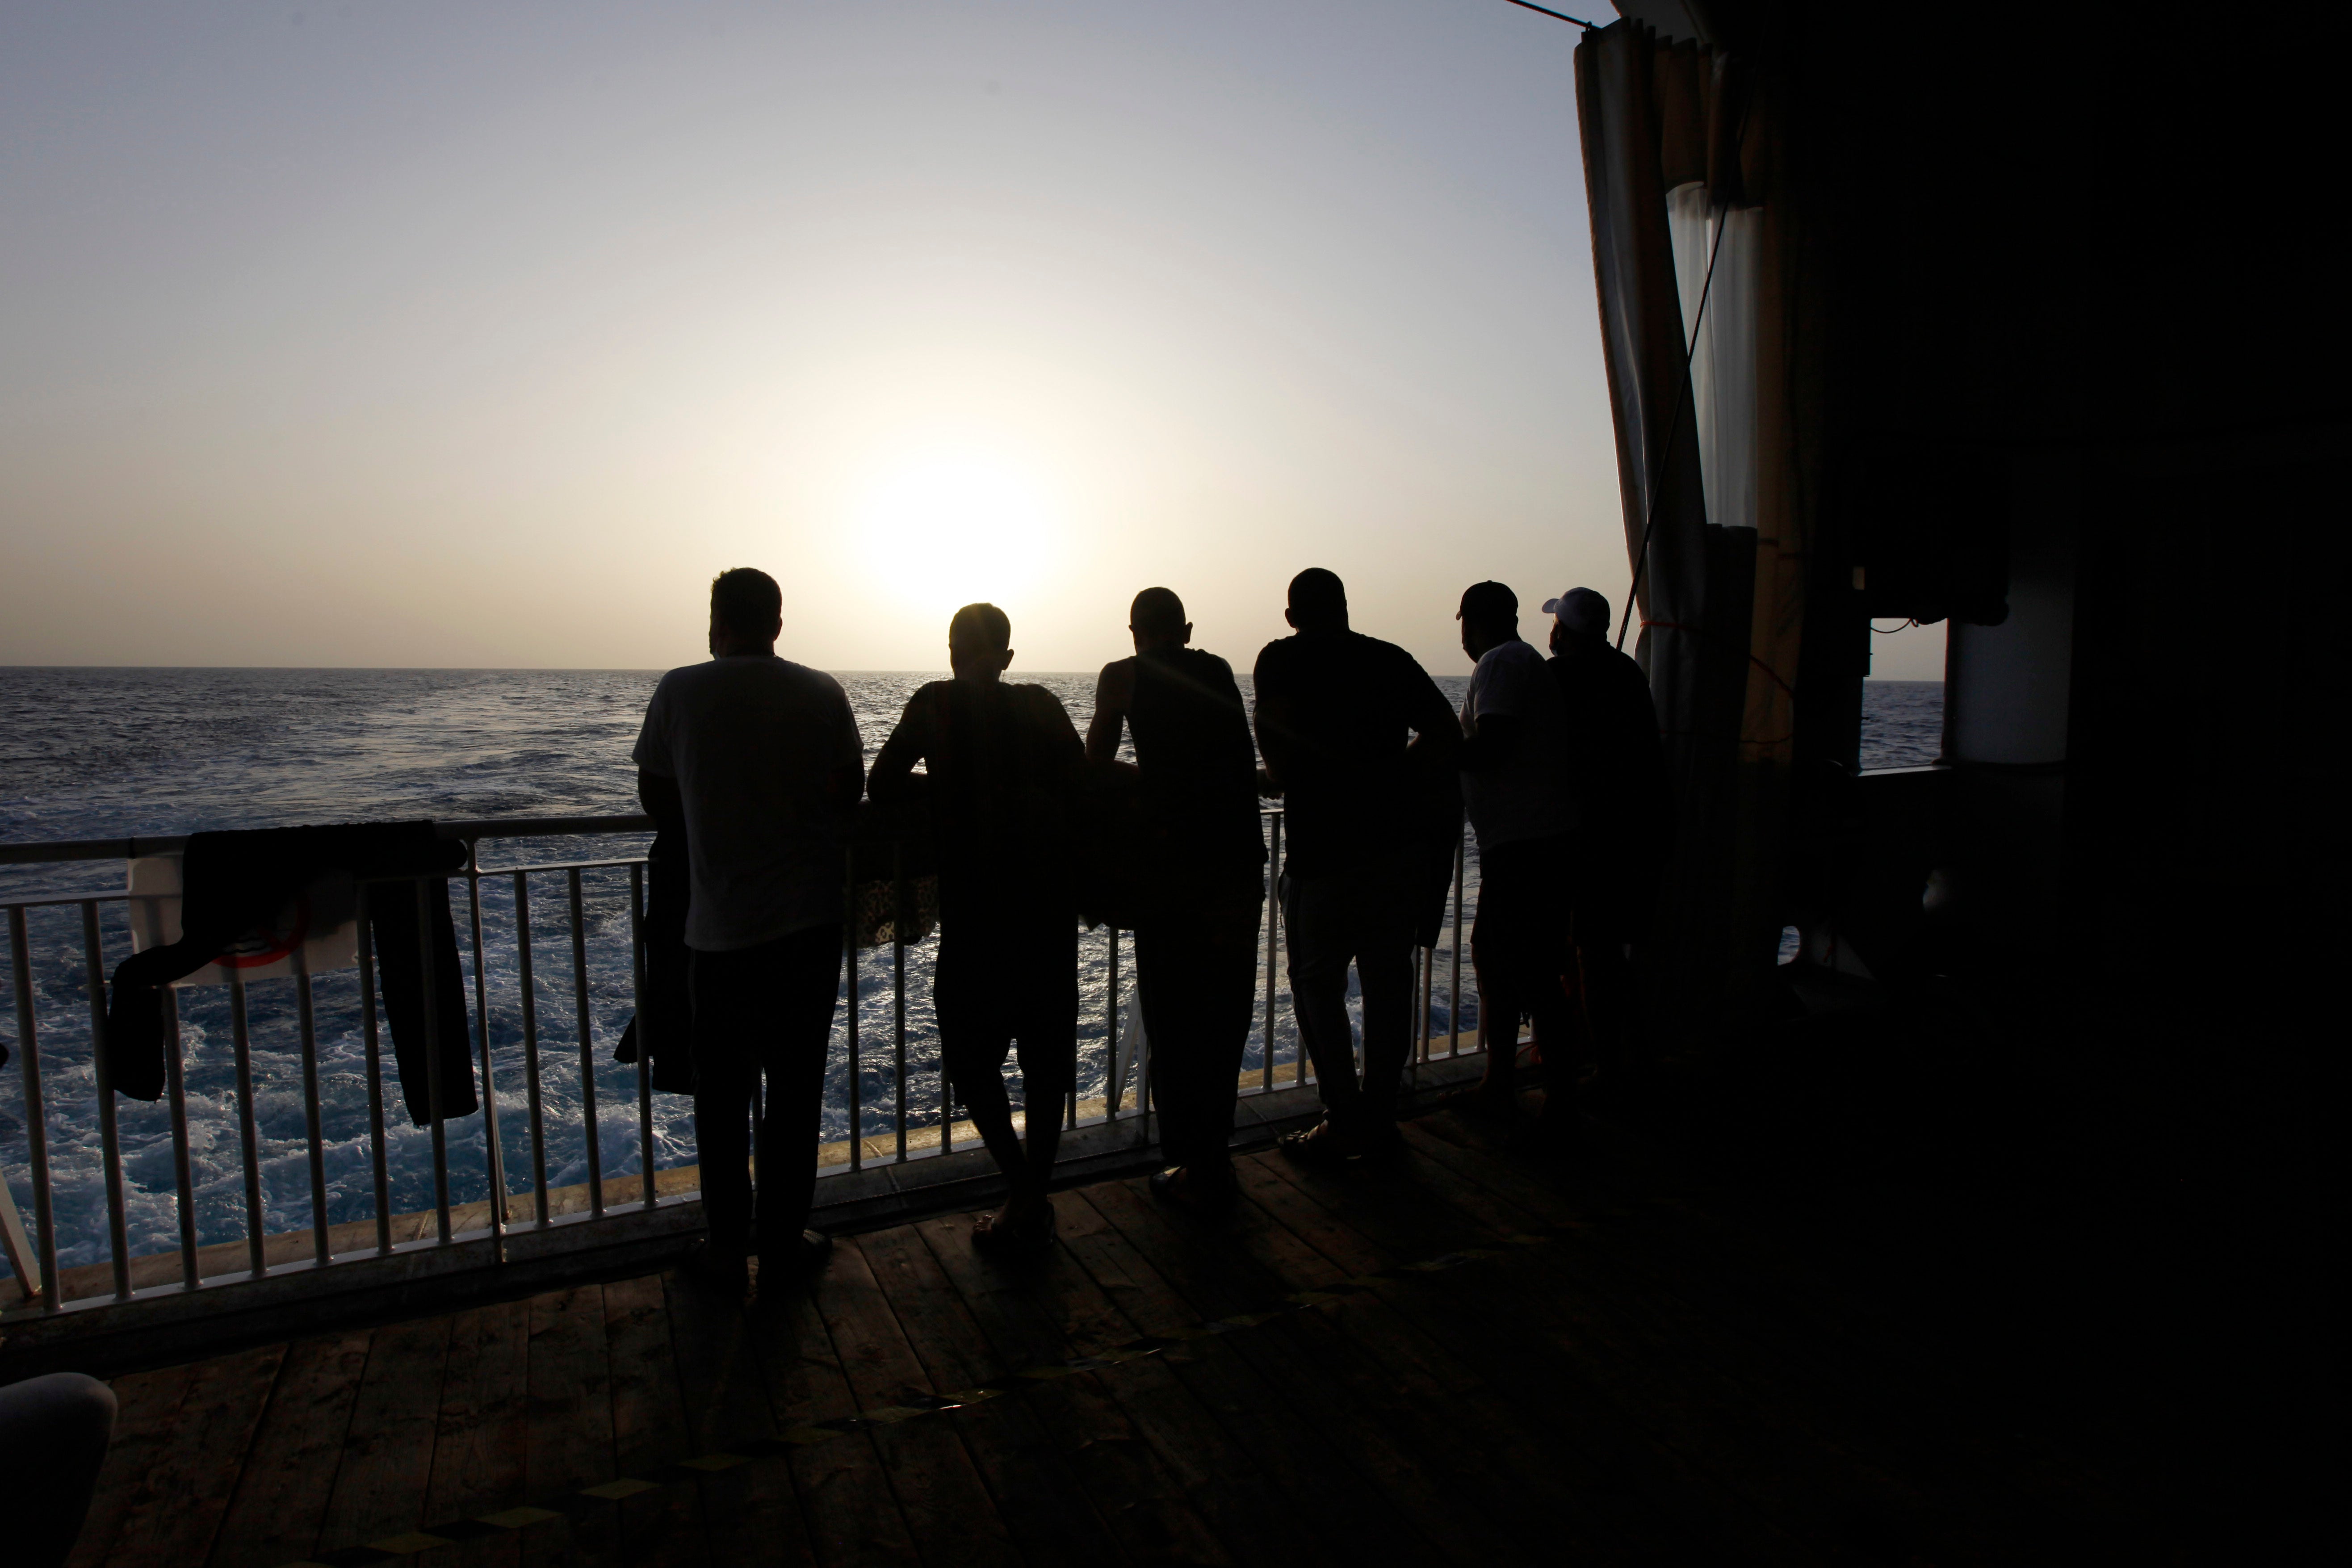 Migration Libya Crackdown